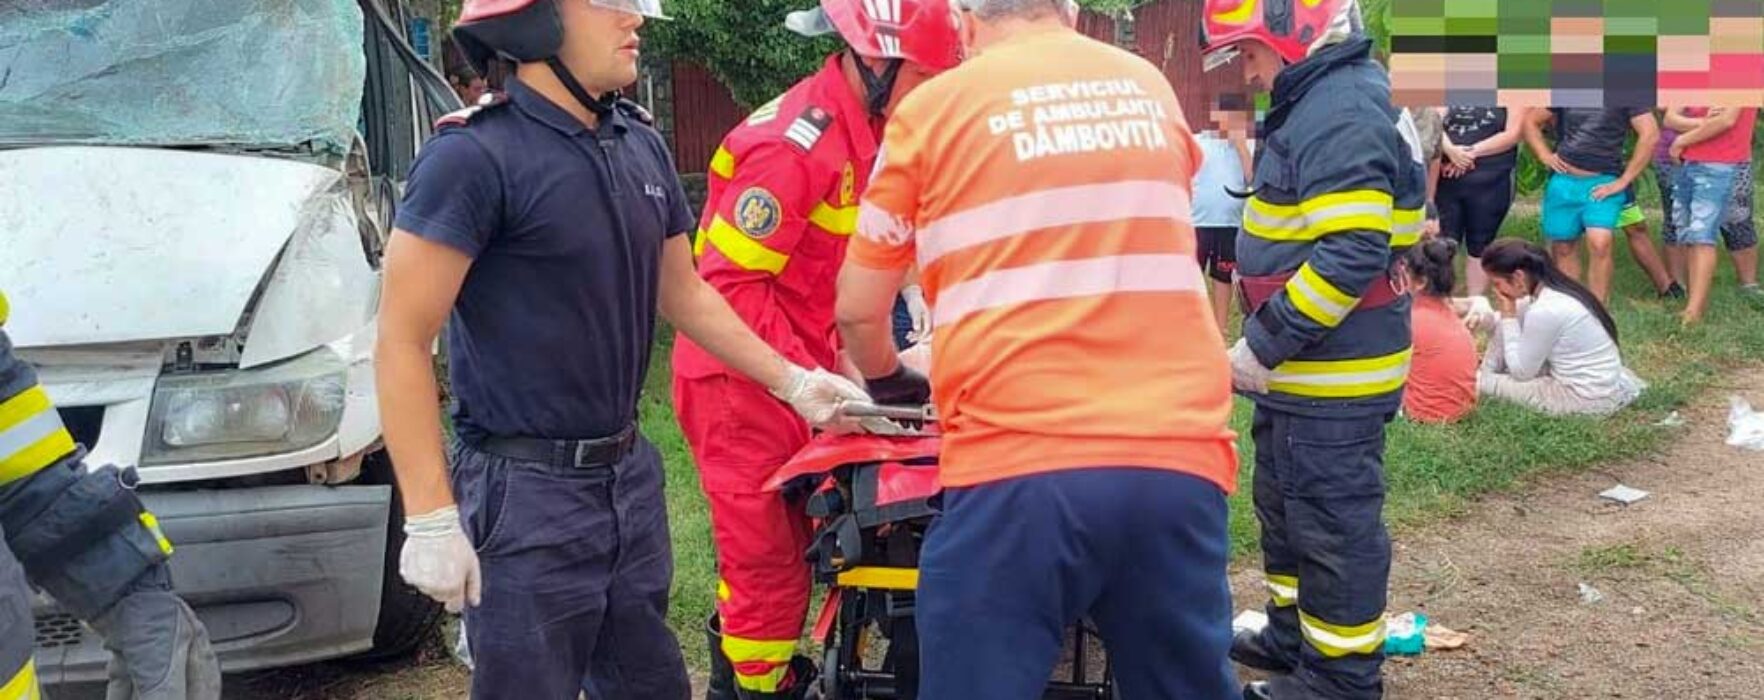 Dâmboviţa: Microbuz implicat într-un accident pe DN1A în Butimanu, şapte persoane evaluate medical